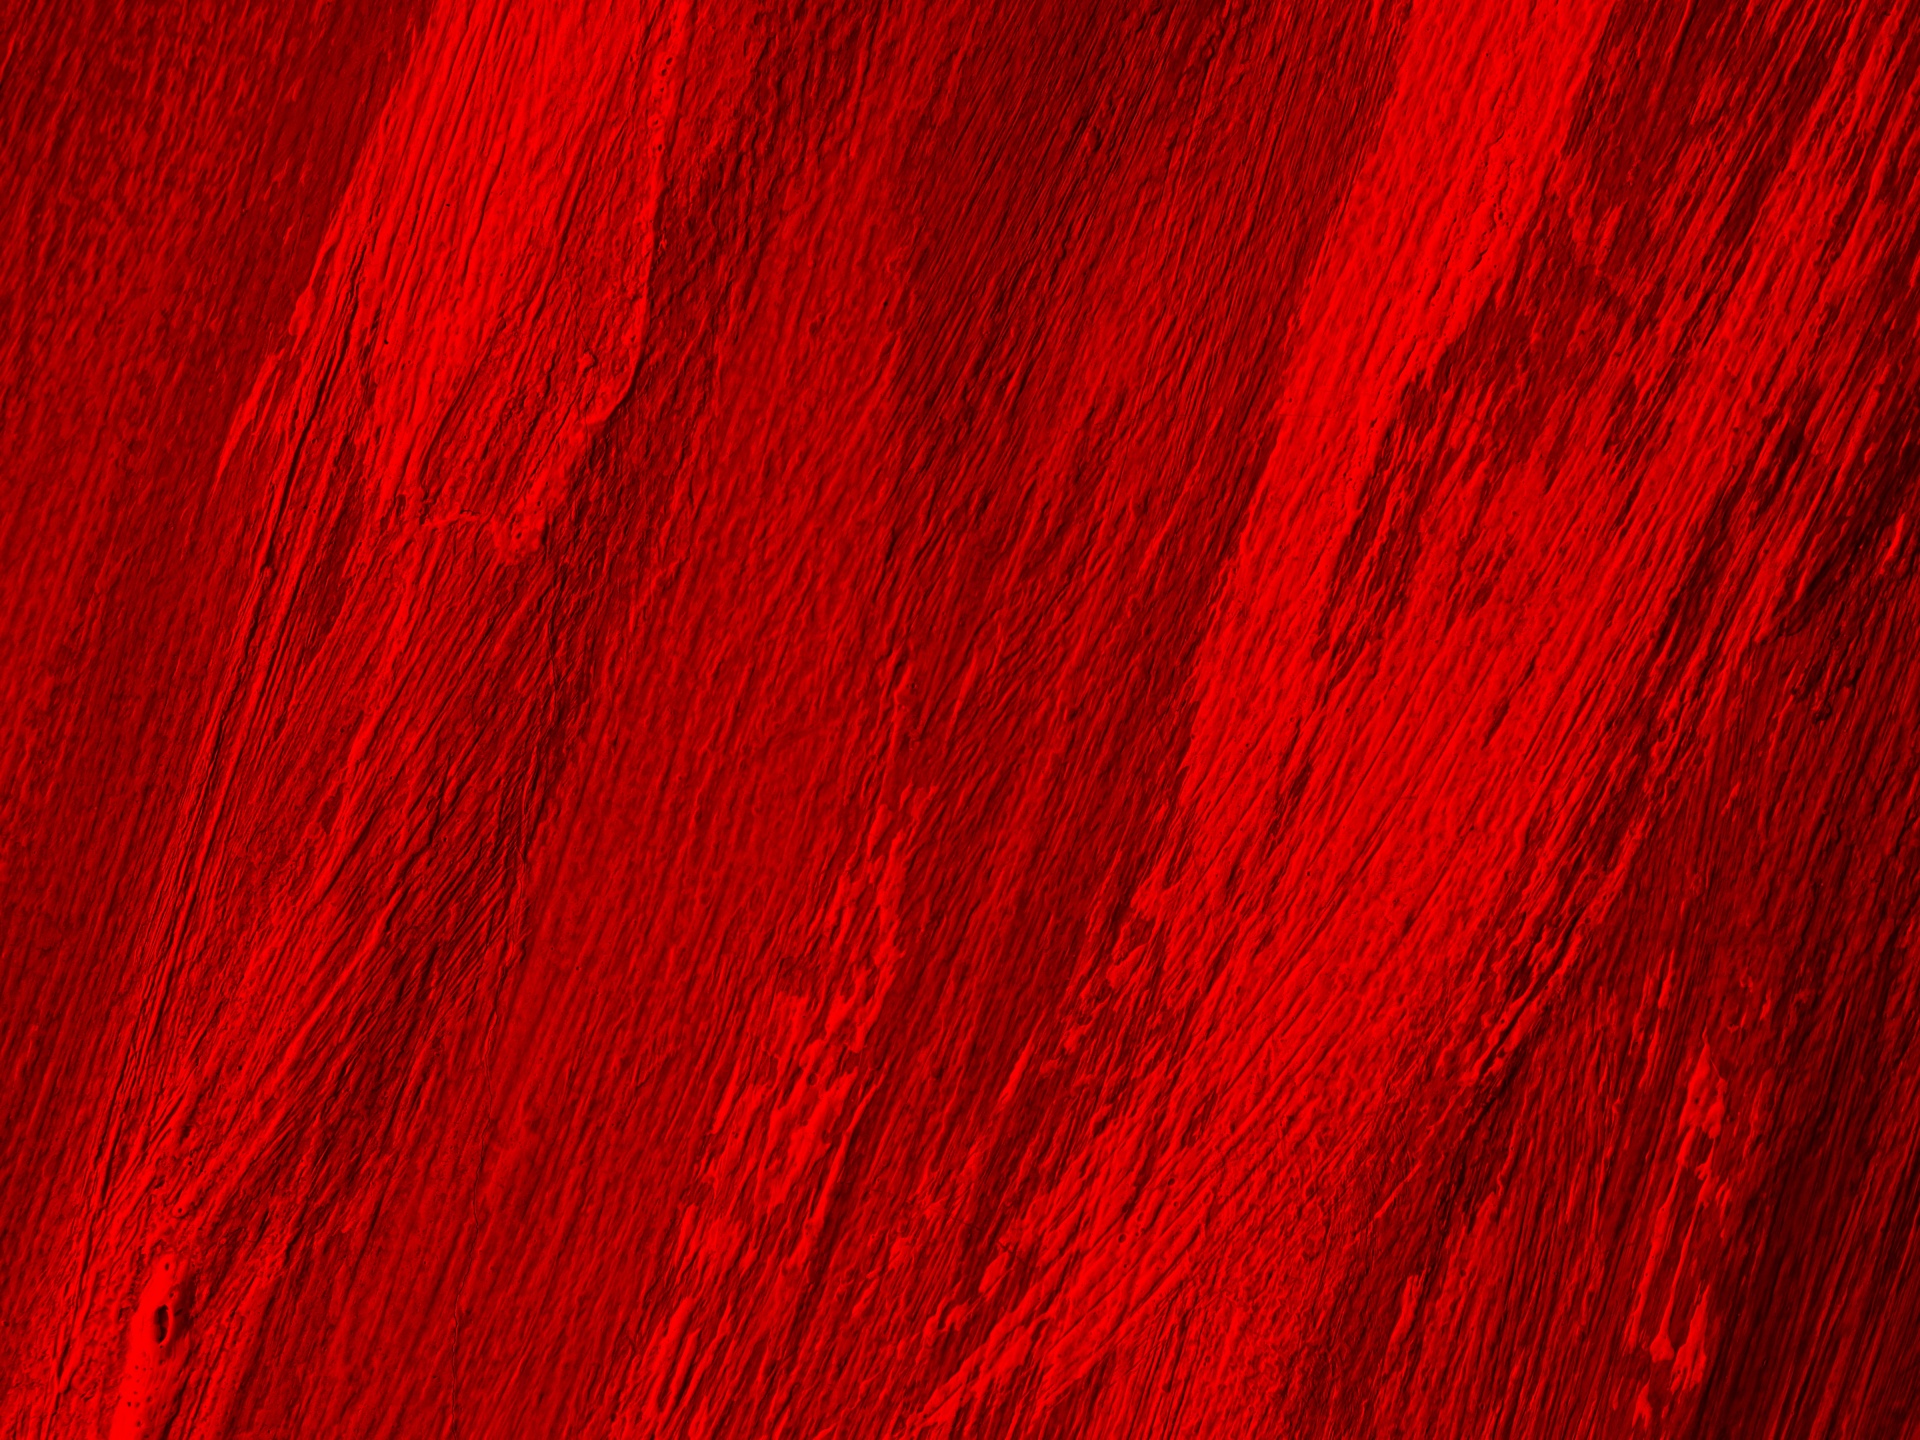 Красненький красная красная. Краска красная. Красная текстура. Красное дерево текстура. Красная краска текстура.